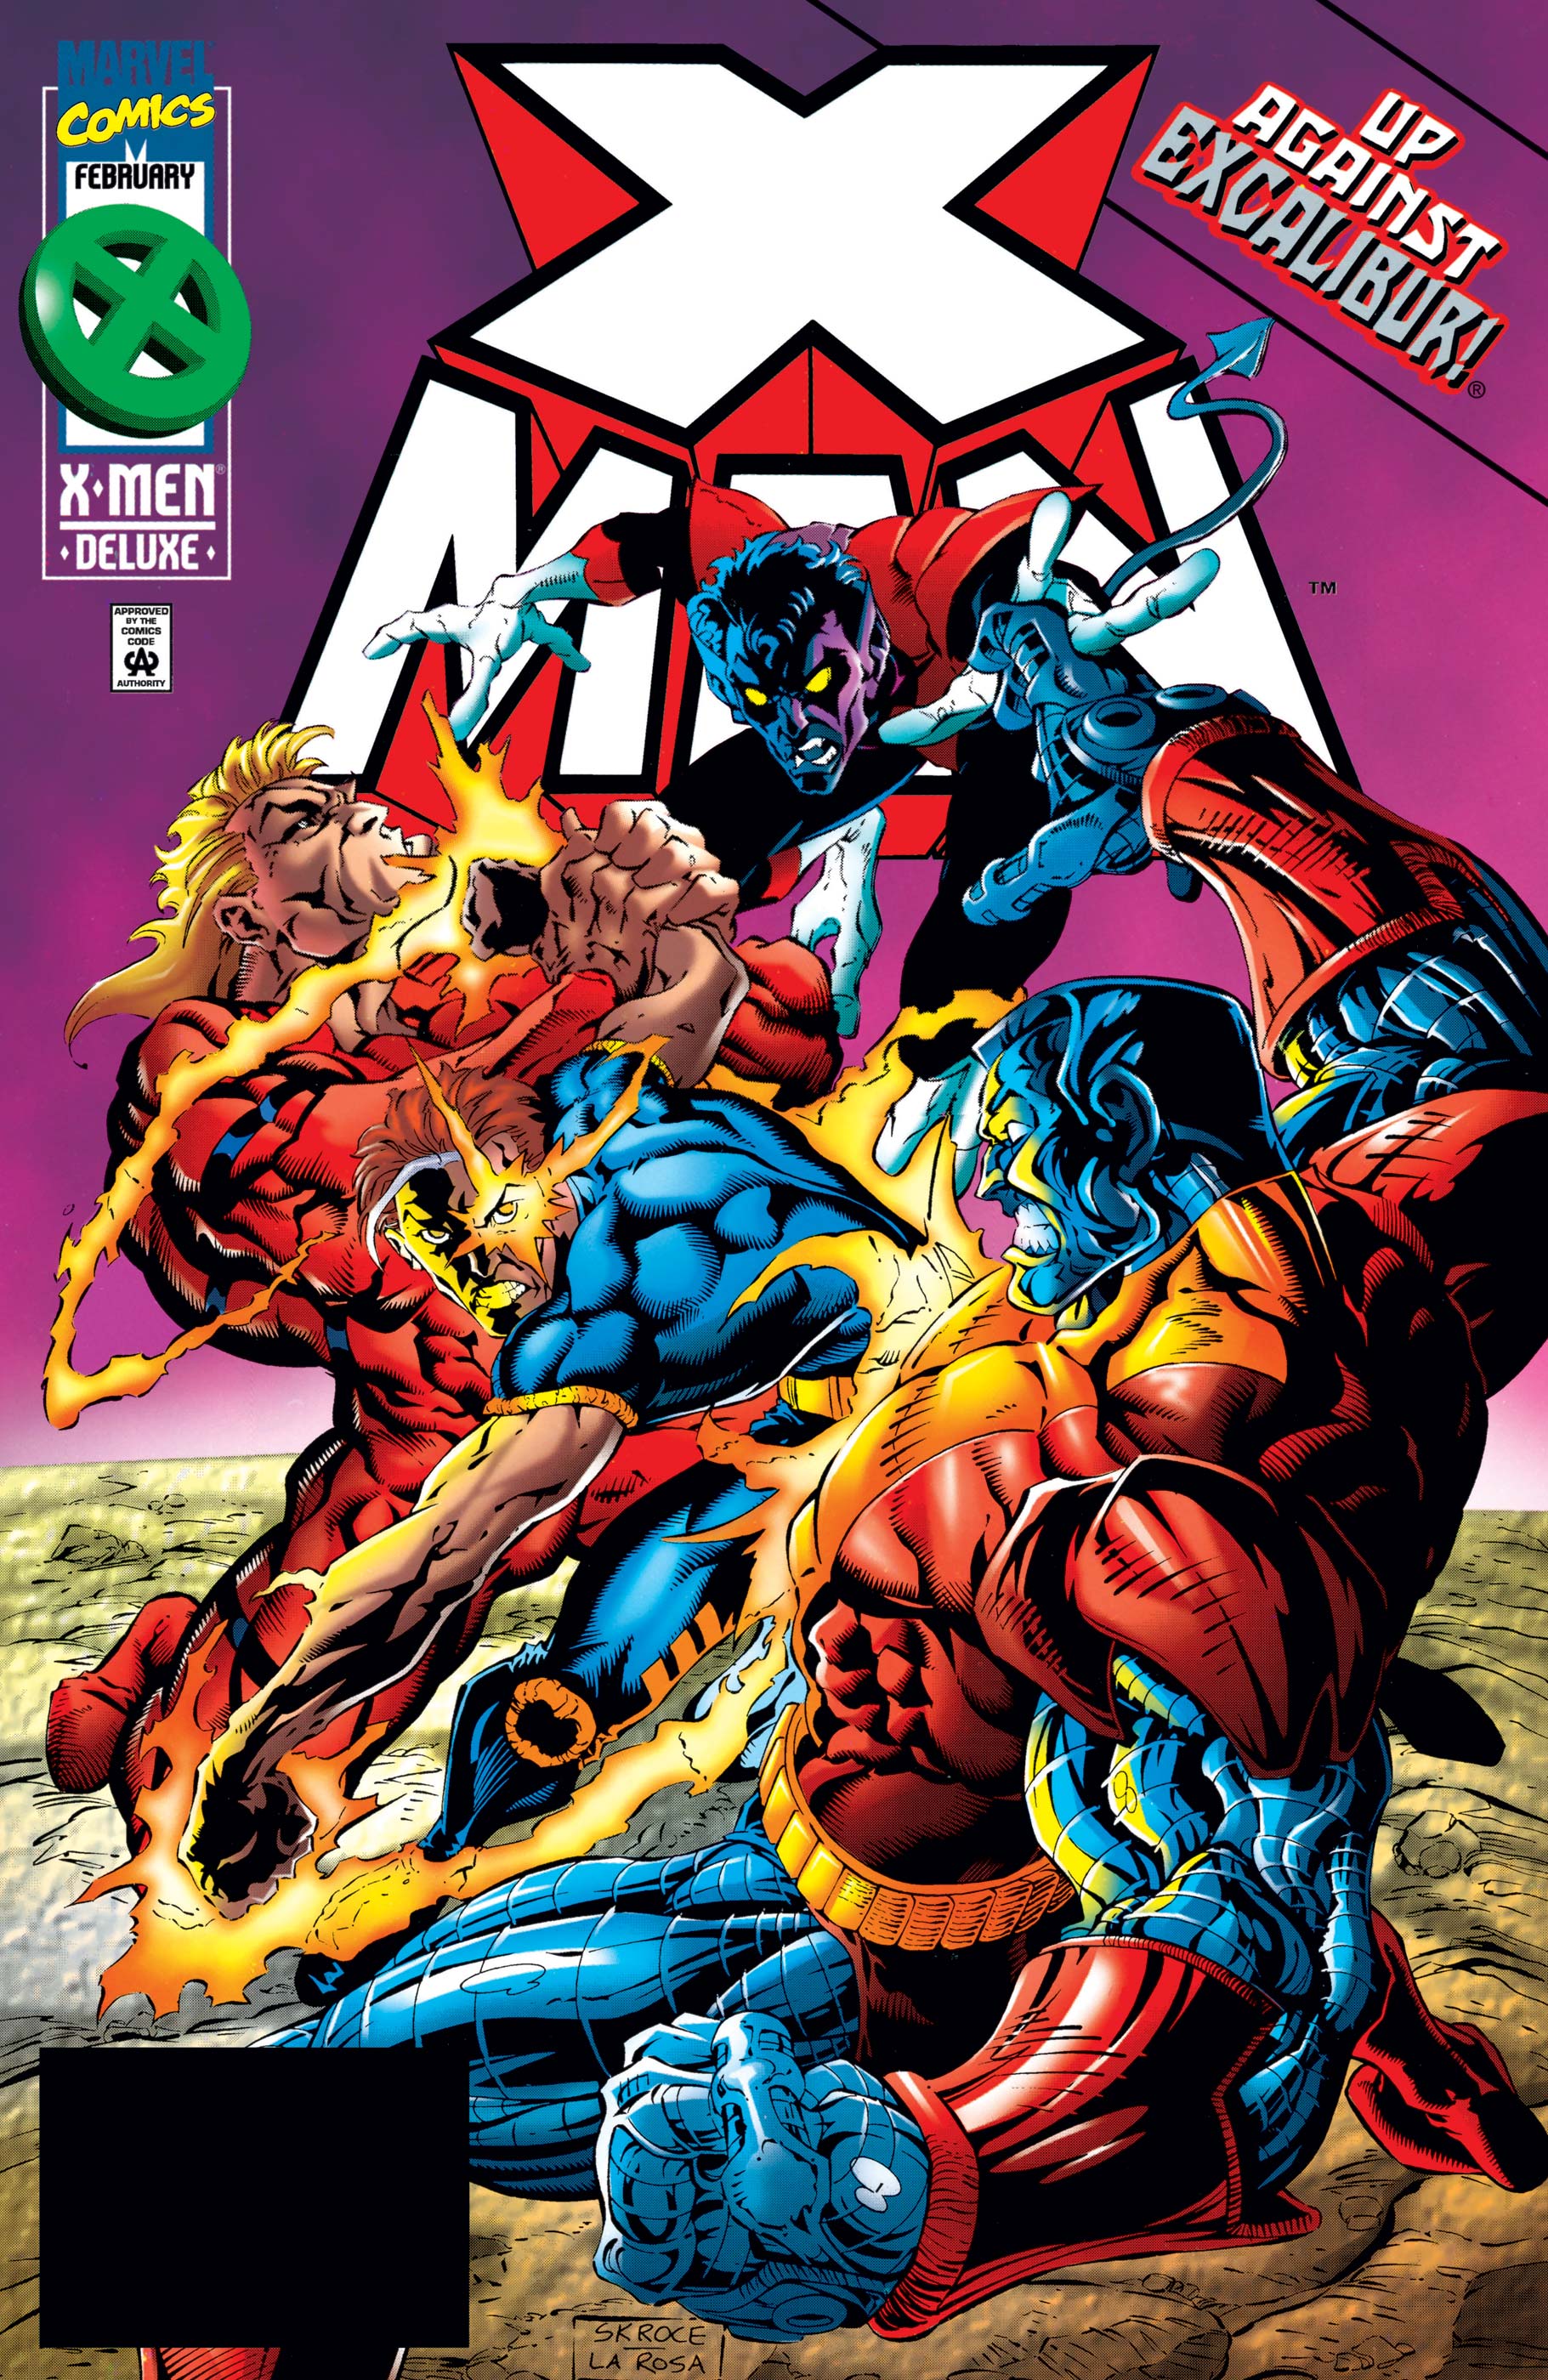 X-Man (1995) #12